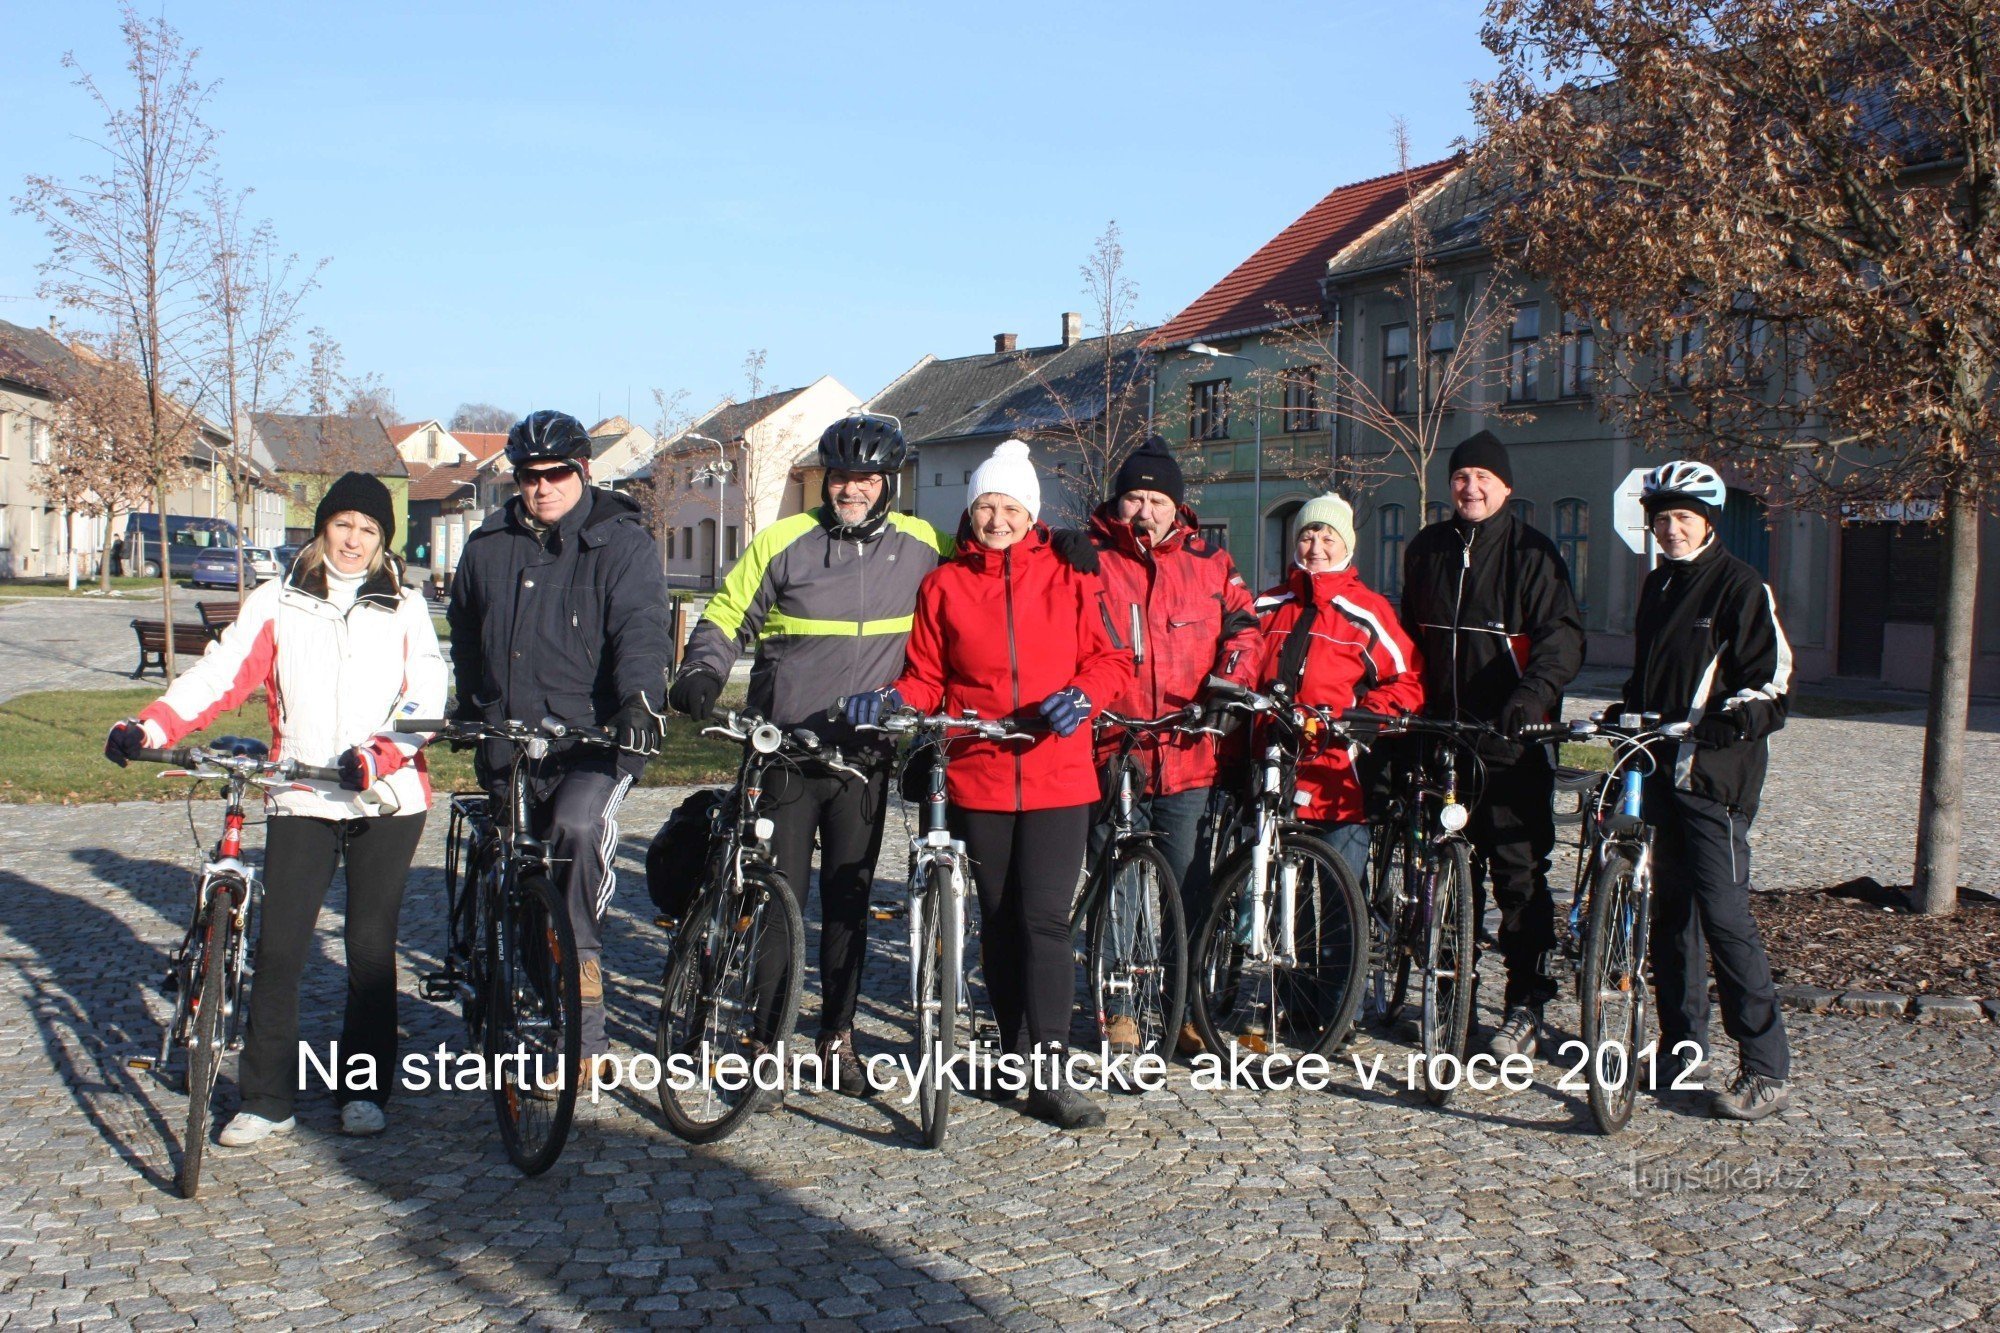 Βόλτα για την Παραμονή Πρωτοχρονιάς 2012 κατά μήκος της ποδηλατικής διαδρομής προς το Morkovice